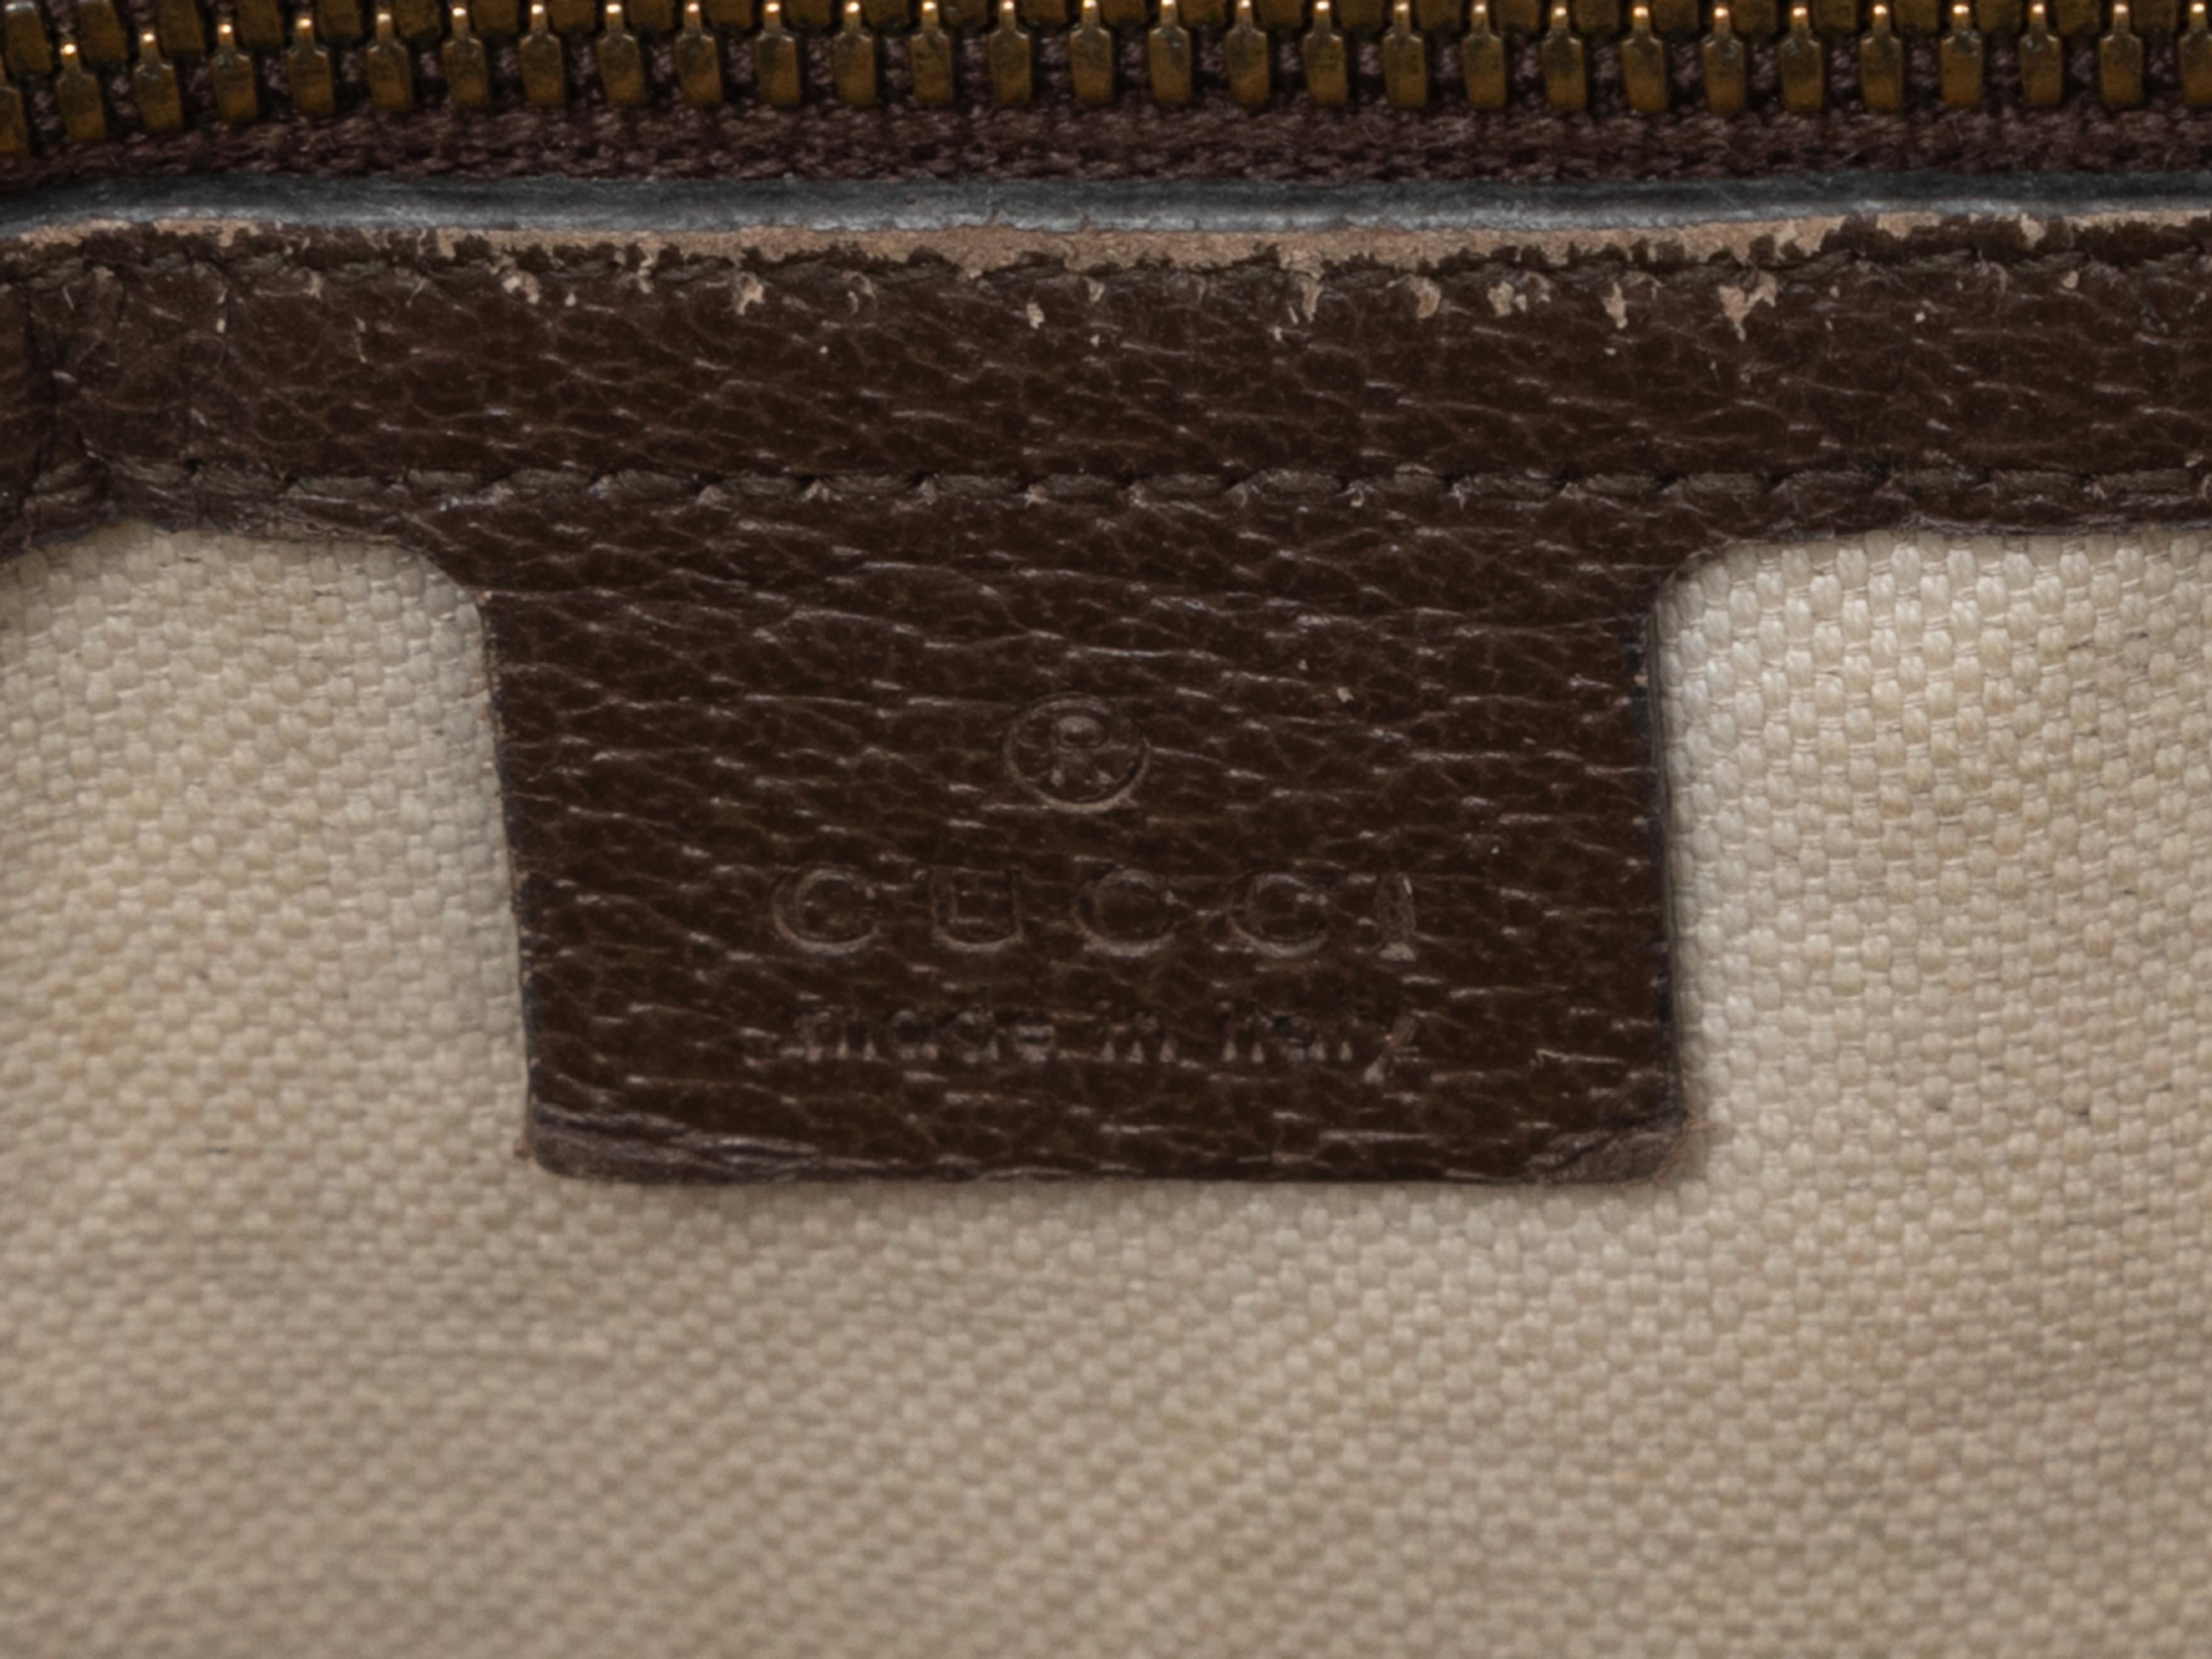 Gucci Ophidia Monogram Messenger Bag in Taupe und Multicolor. Diese Tasche verfügt über einen Körper aus beschichtetem Canvas mit Monogrammen, goldfarbene Hardware, Webbesatz, Lederbesatz, eine Fronttasche mit Reißverschluss, einen einzelnen flachen